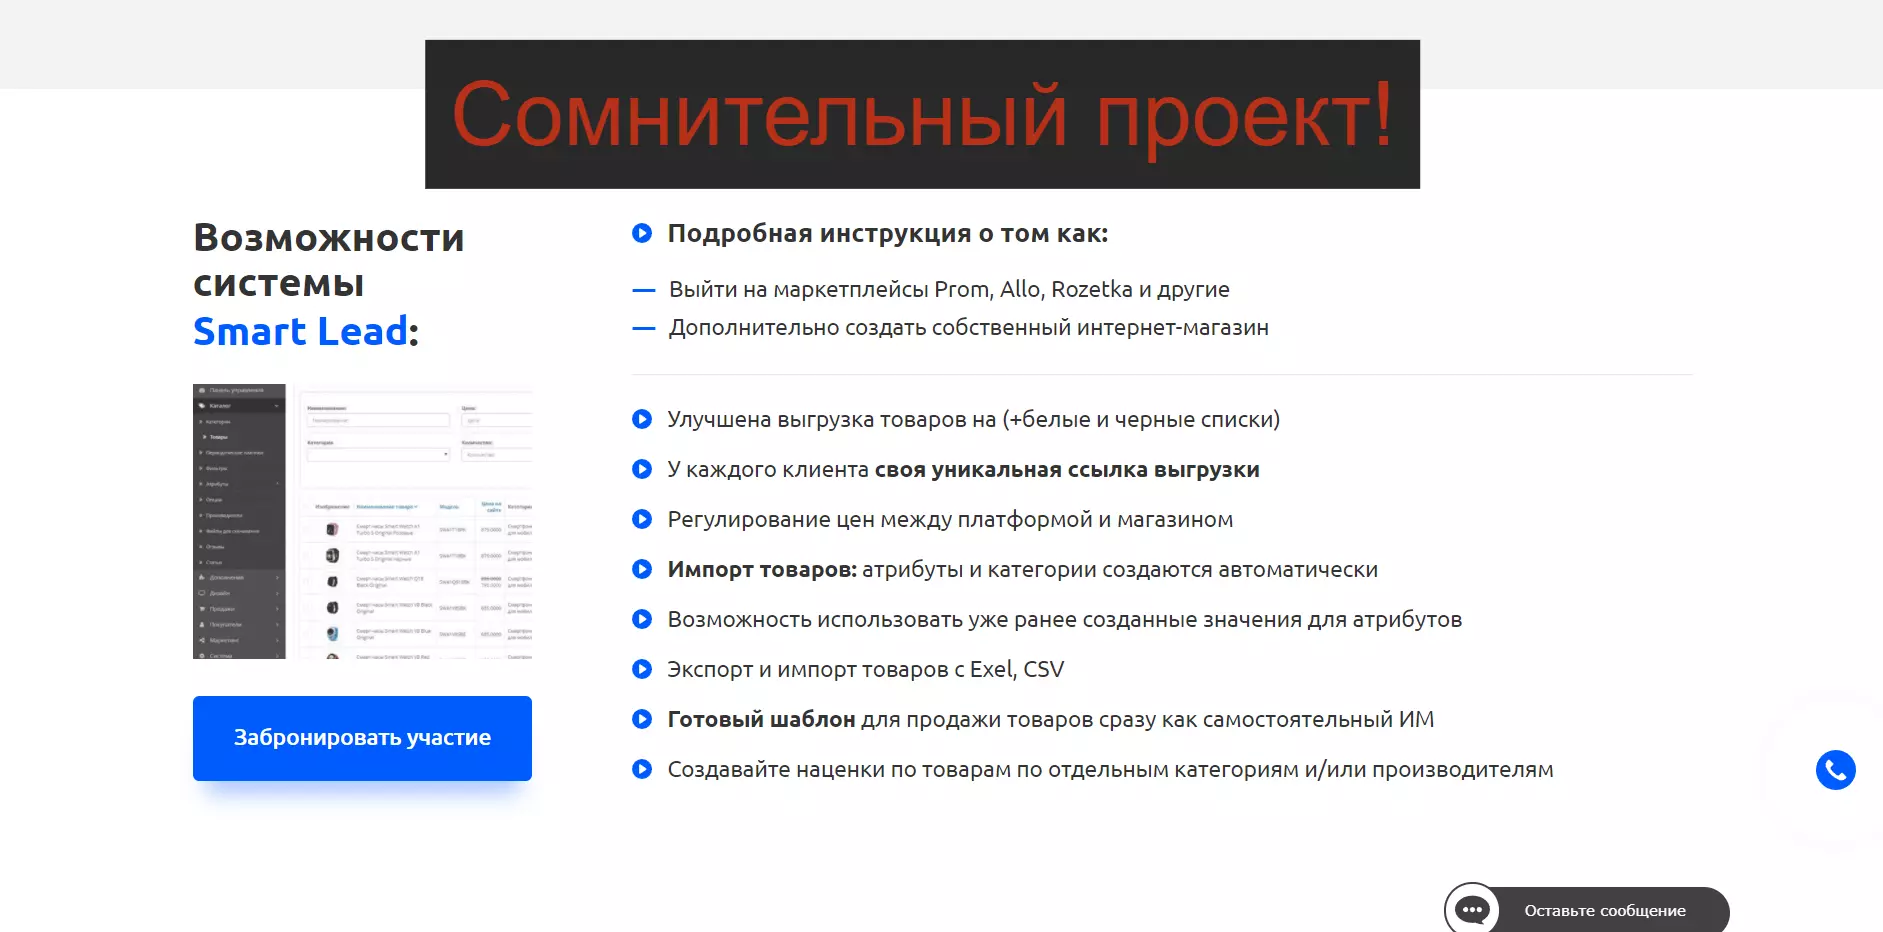 Отзывы о Владимире Солошенко и системе продаж Smart Lead